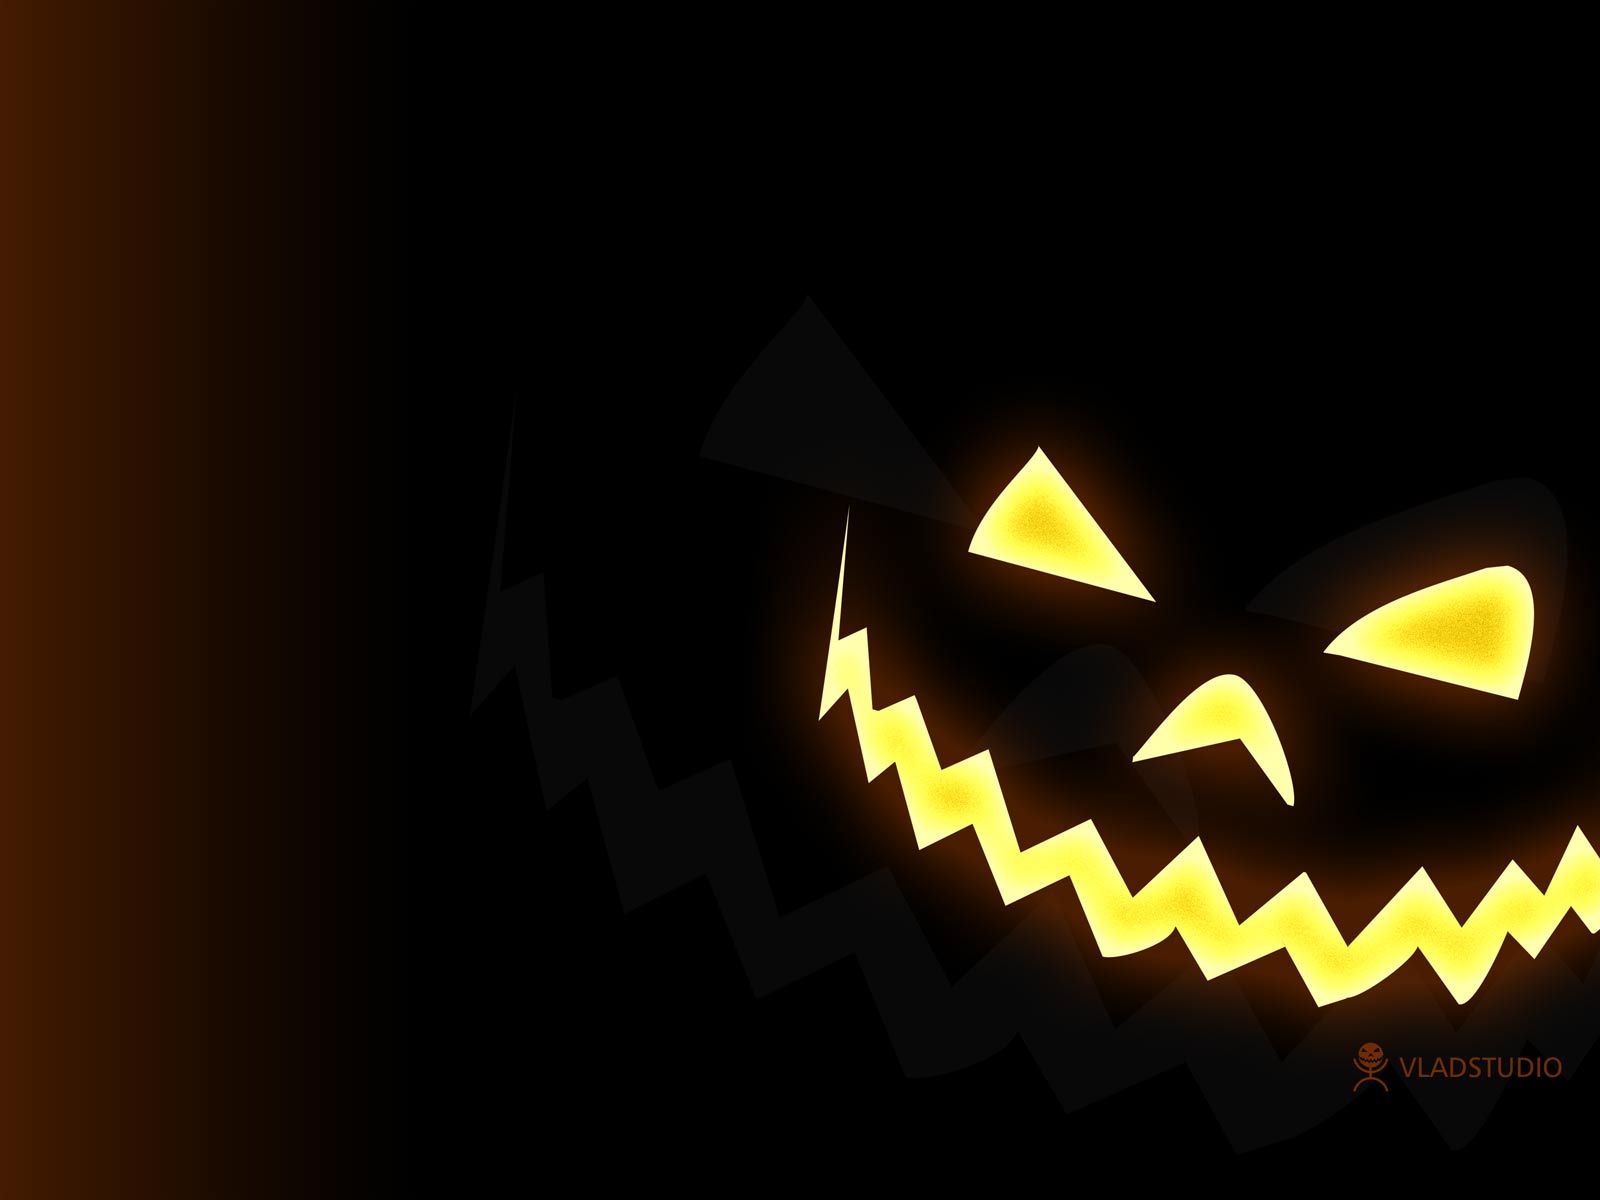 Fun Halloween Pumpkins Wallpaper Image Designerfied